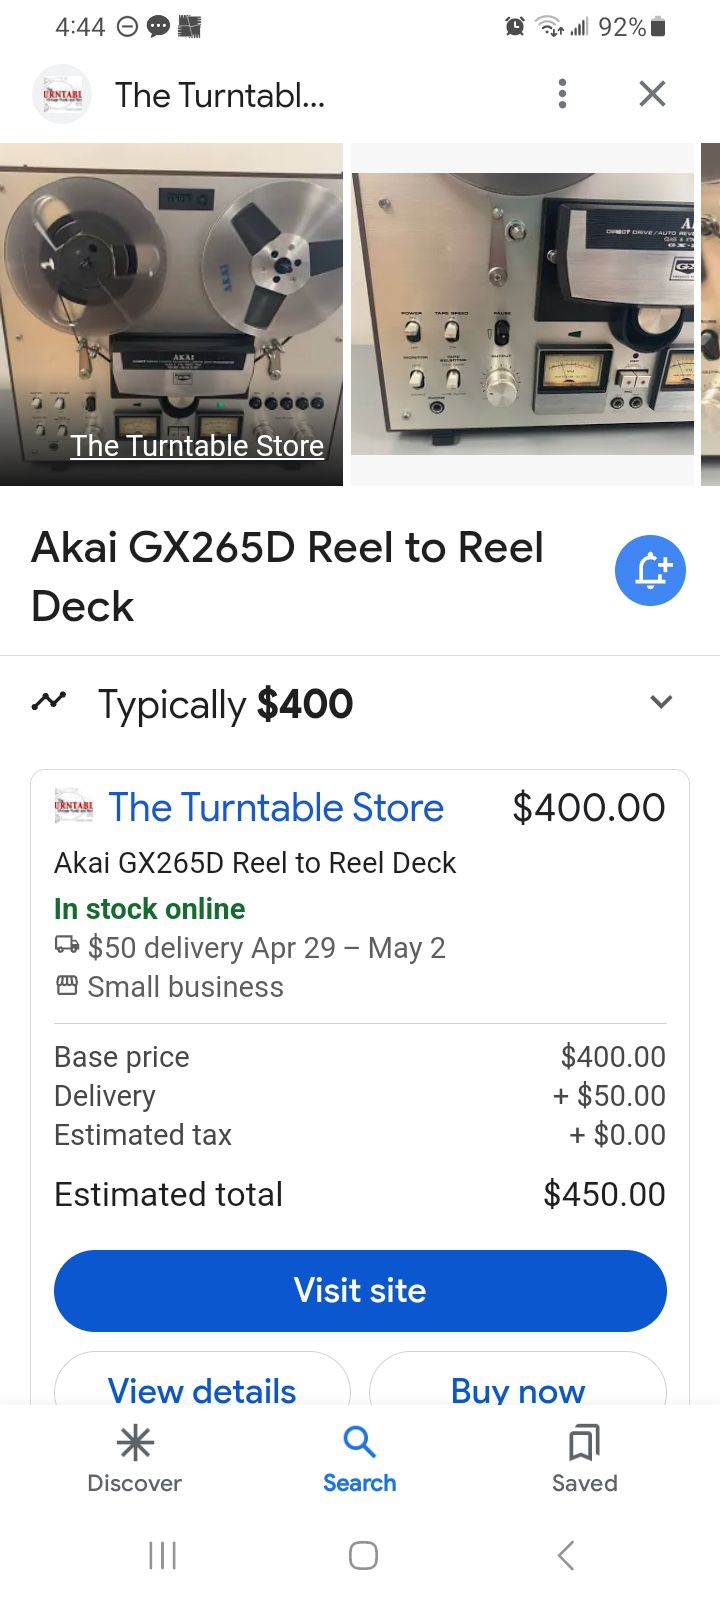 Akai GX265D Reel to Reel Deck